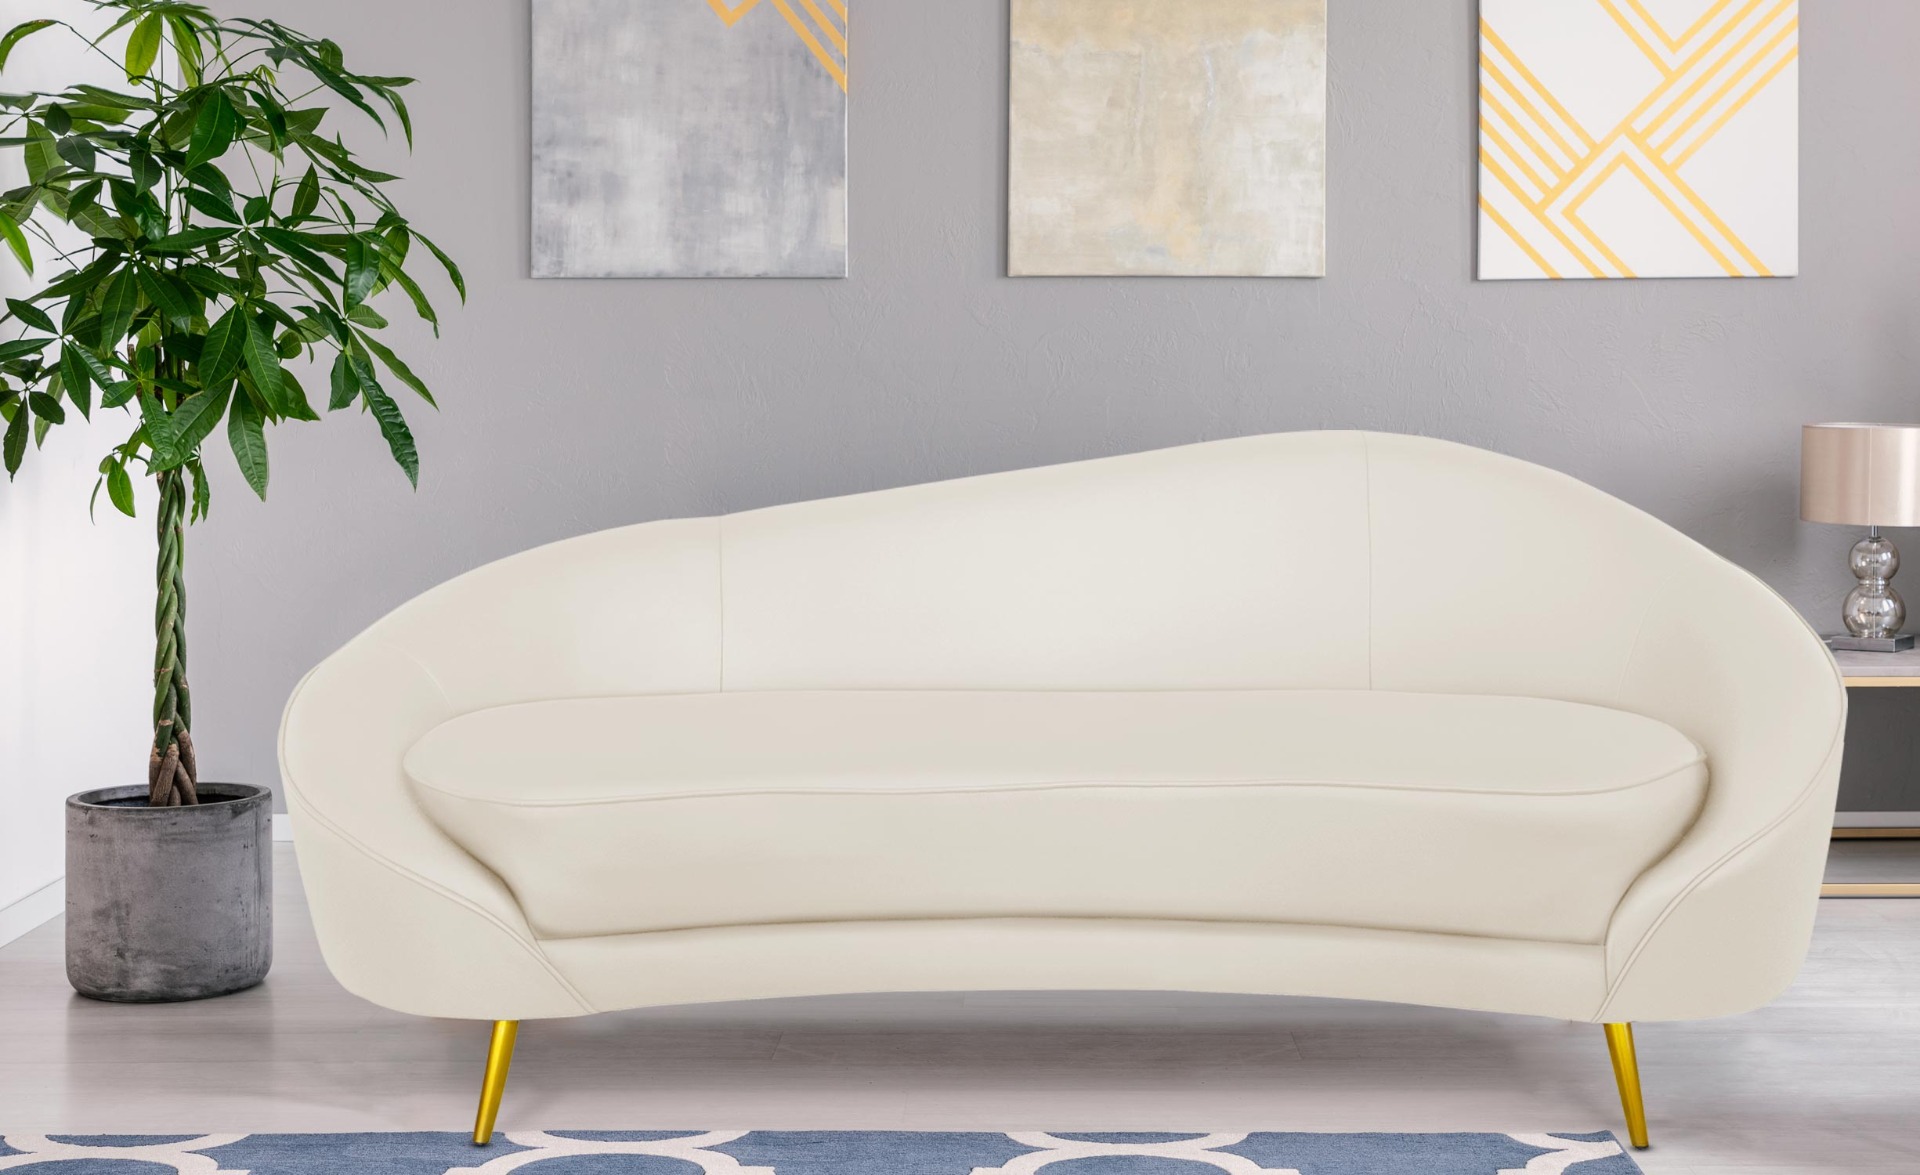 Havane 3-Sitzer-Sofa mit goldenen Metallbeinen und Kunstleder Beige